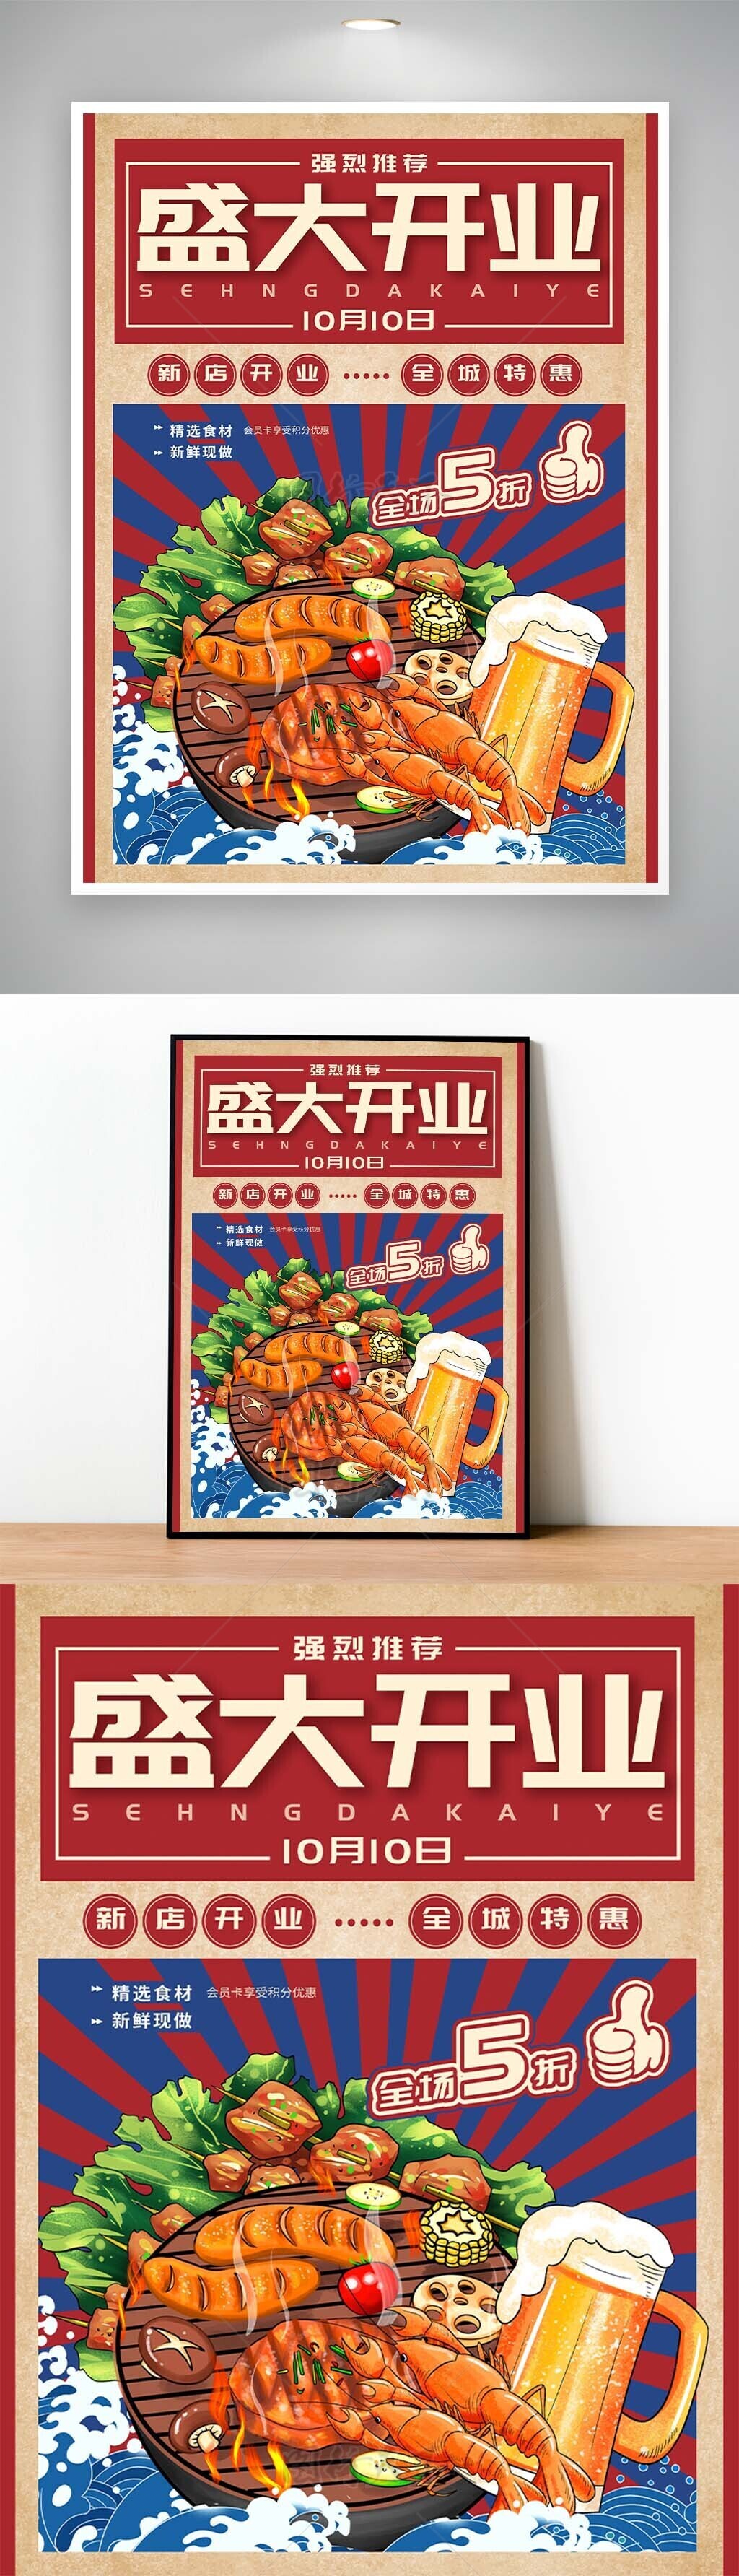 新店开业创意漫画烧烤啤酒美食海报模板